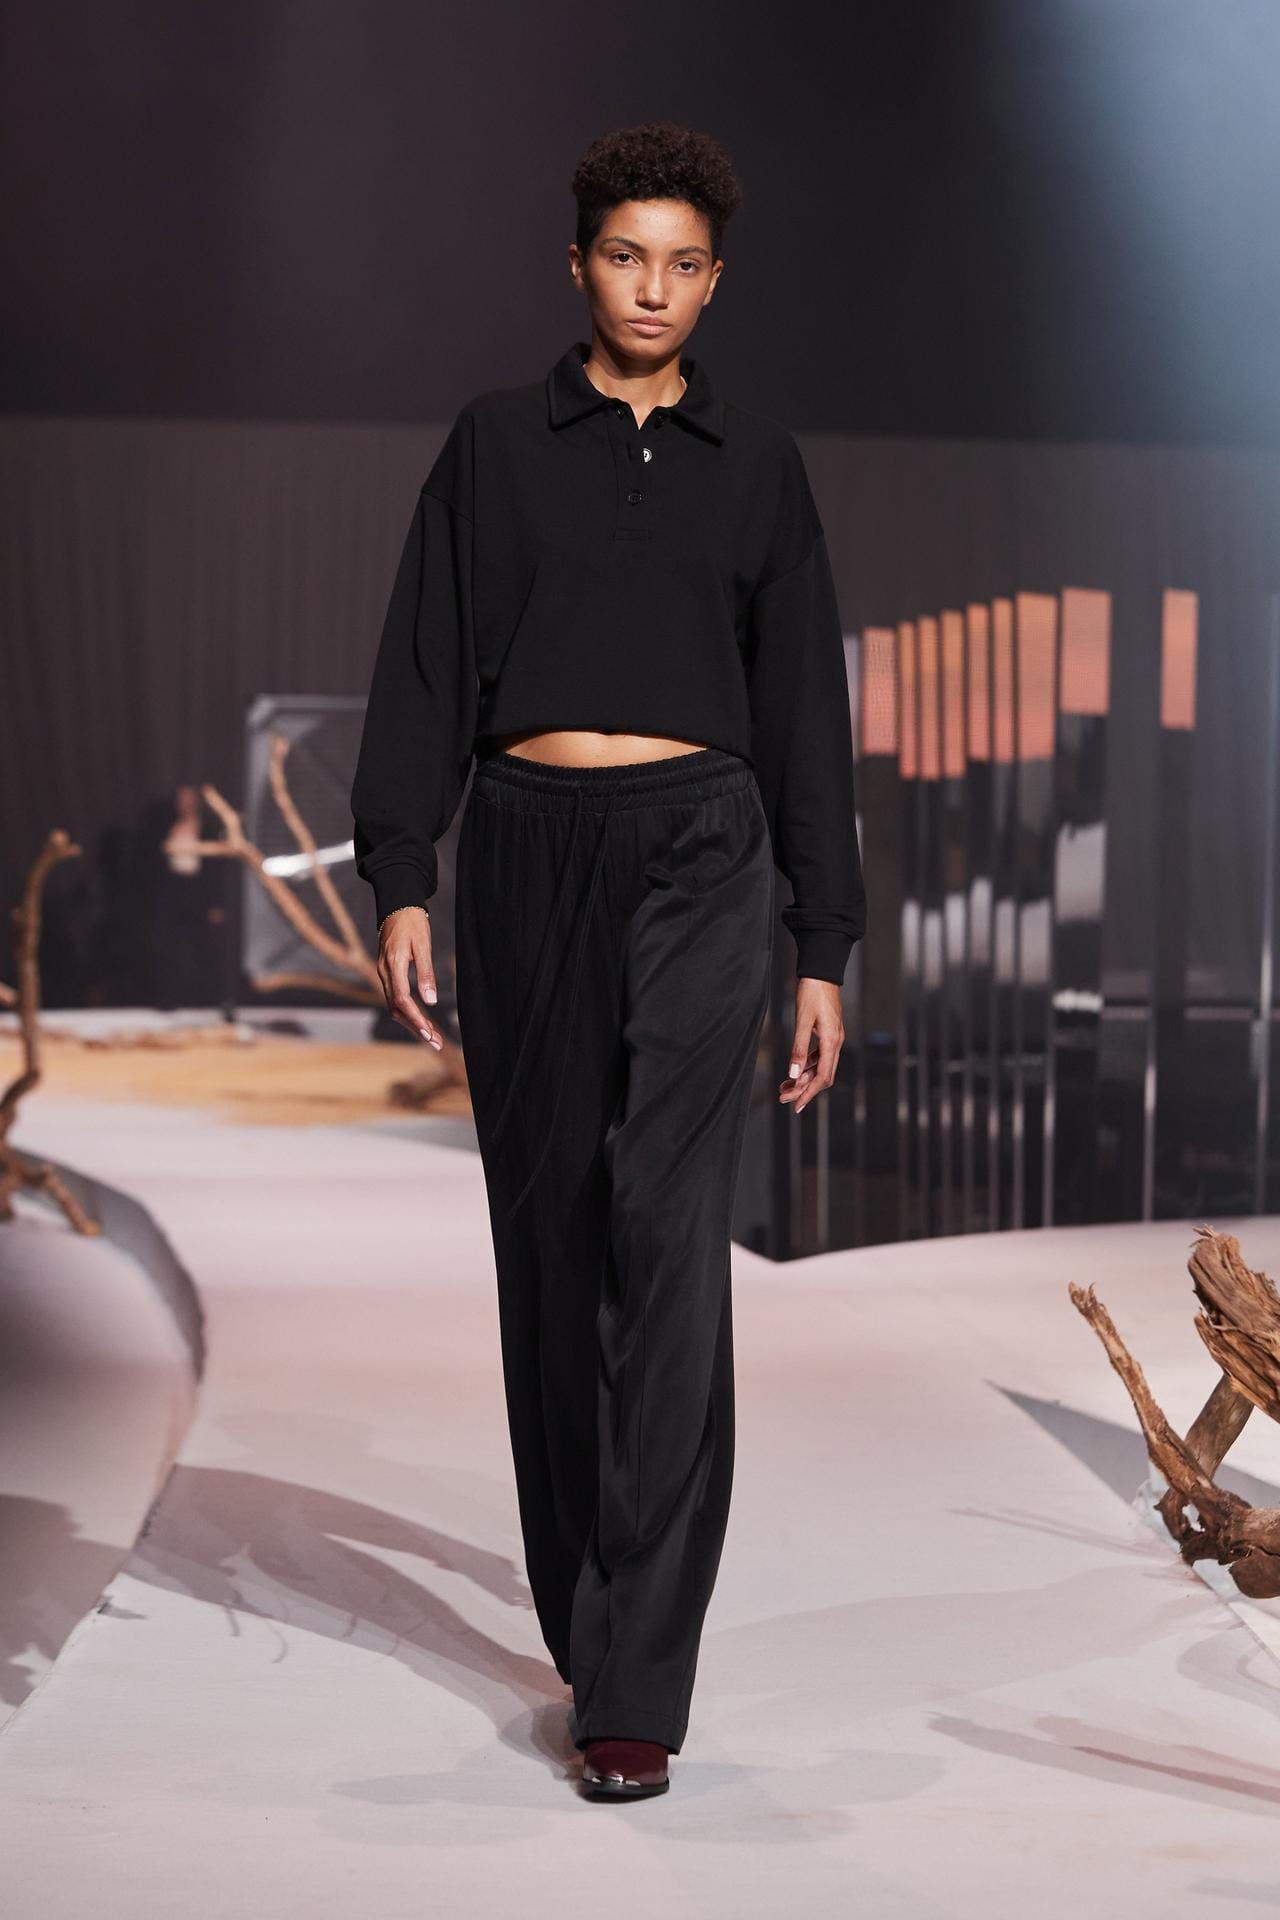 Lena Meyer-Landrut präsentiert ihre neueste Kollektion bei der About You Fashion Week in Berlin.